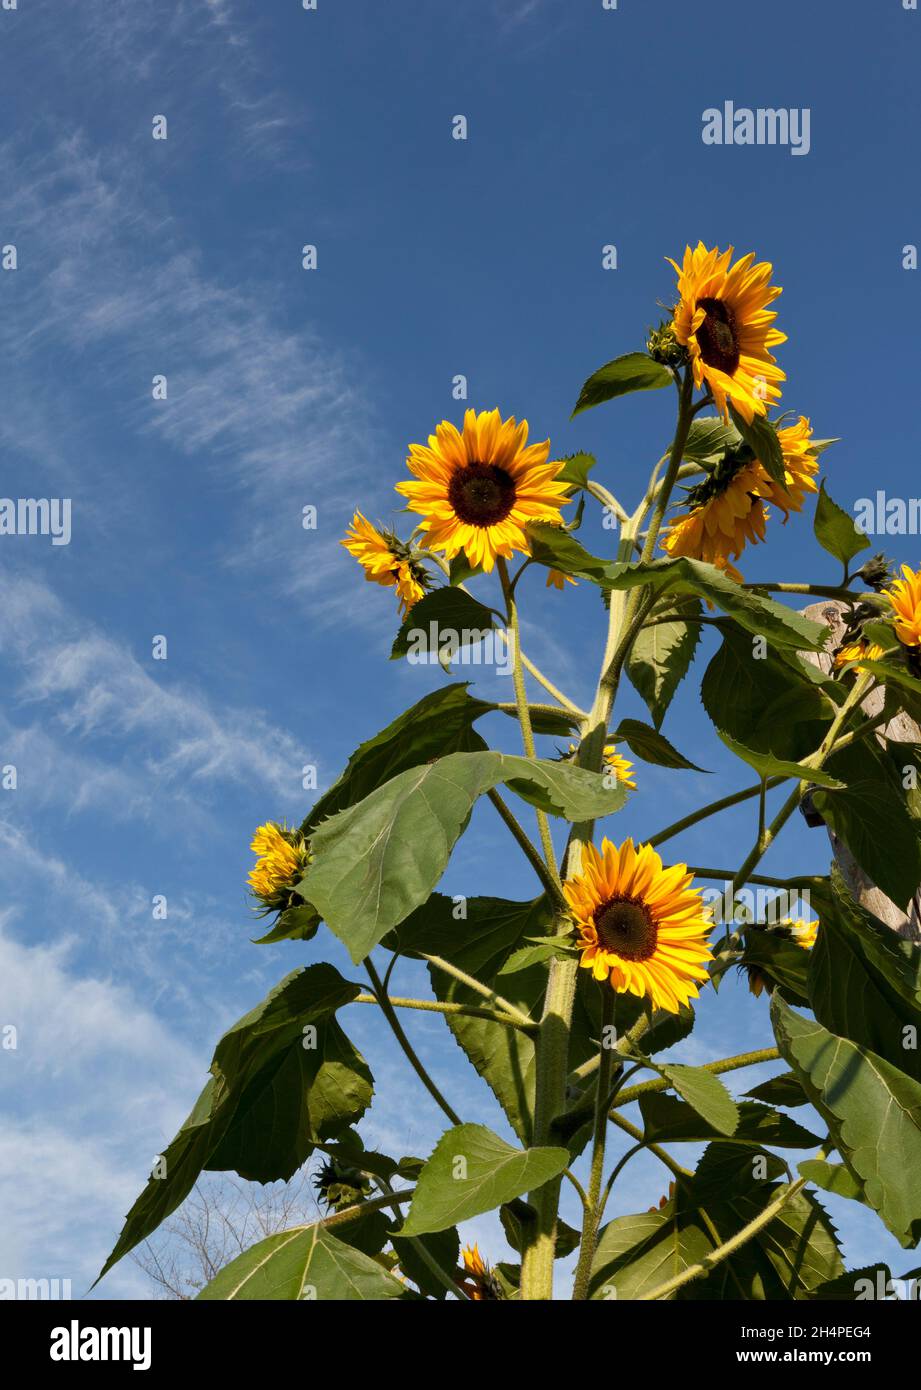 Sun flowers against a blue sky Stock Photo